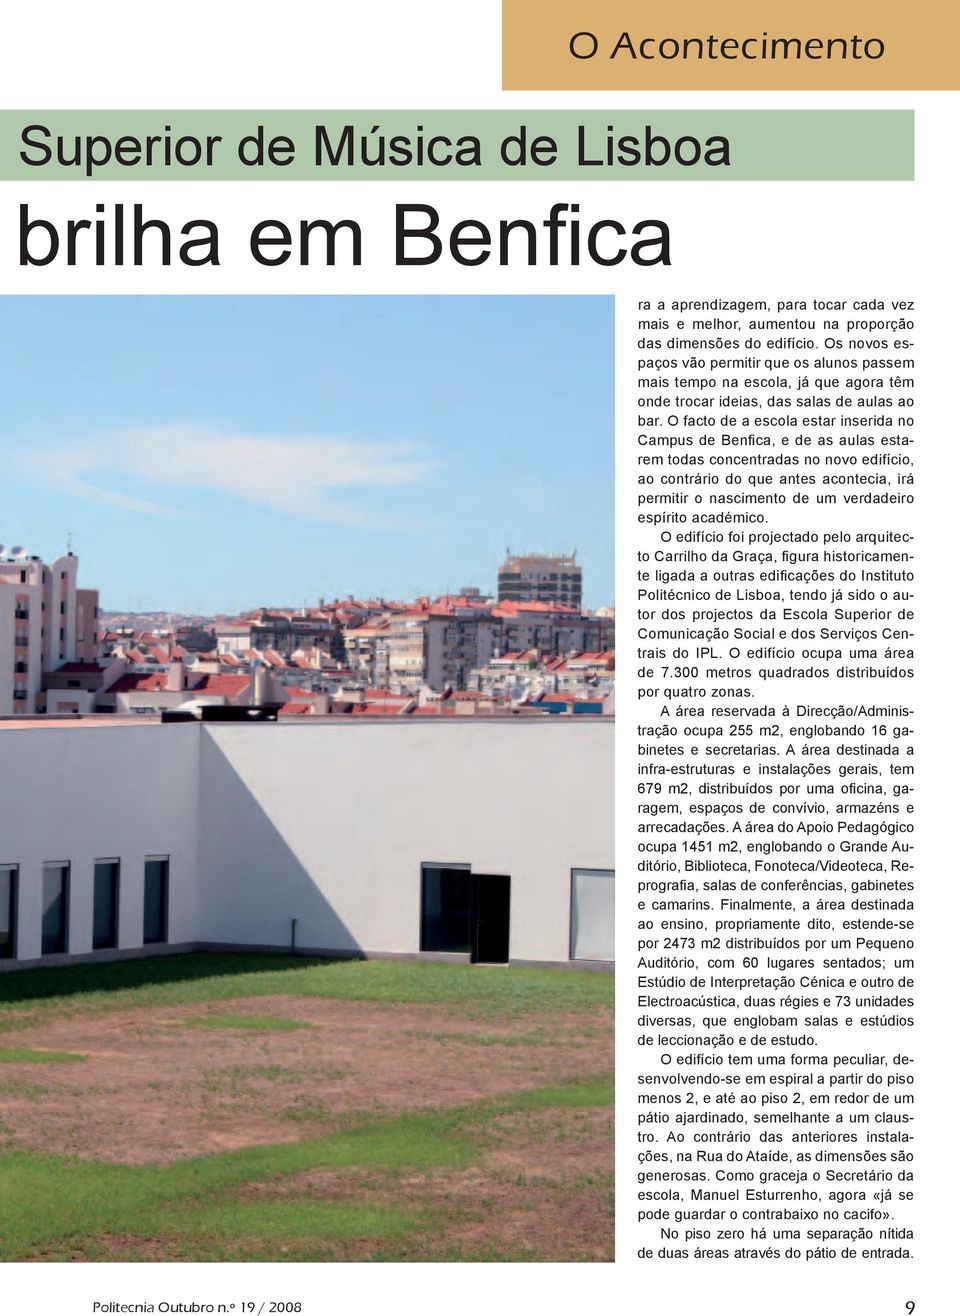 O facto de a escola estar inserida no Campus de Benfica, e de as aulas estarem todas concentradas no novo edifício, ao contrário do que antes acontecia, irá permitir o nascimento de um verdadeiro